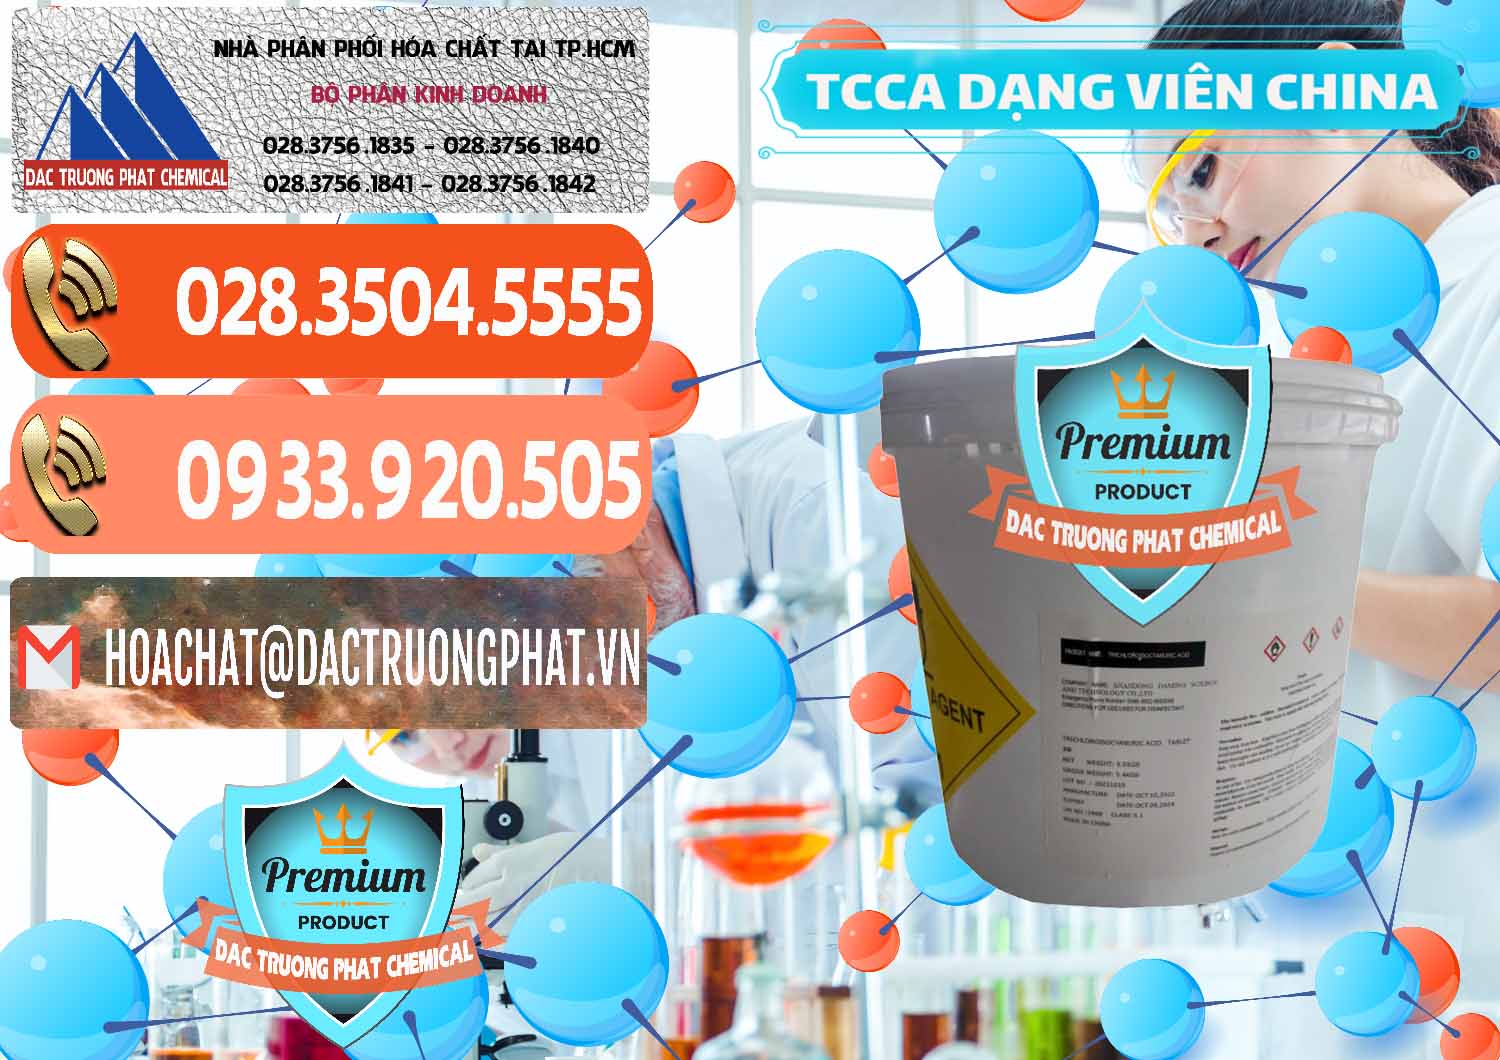 Đơn vị chuyên cung cấp - bán TCCA - Acid Trichloroisocyanuric Dạng Viên Thùng 5kg Trung Quốc China - 0379 - Công ty phân phối & cung ứng hóa chất tại TP.HCM - hoachatmientay.com